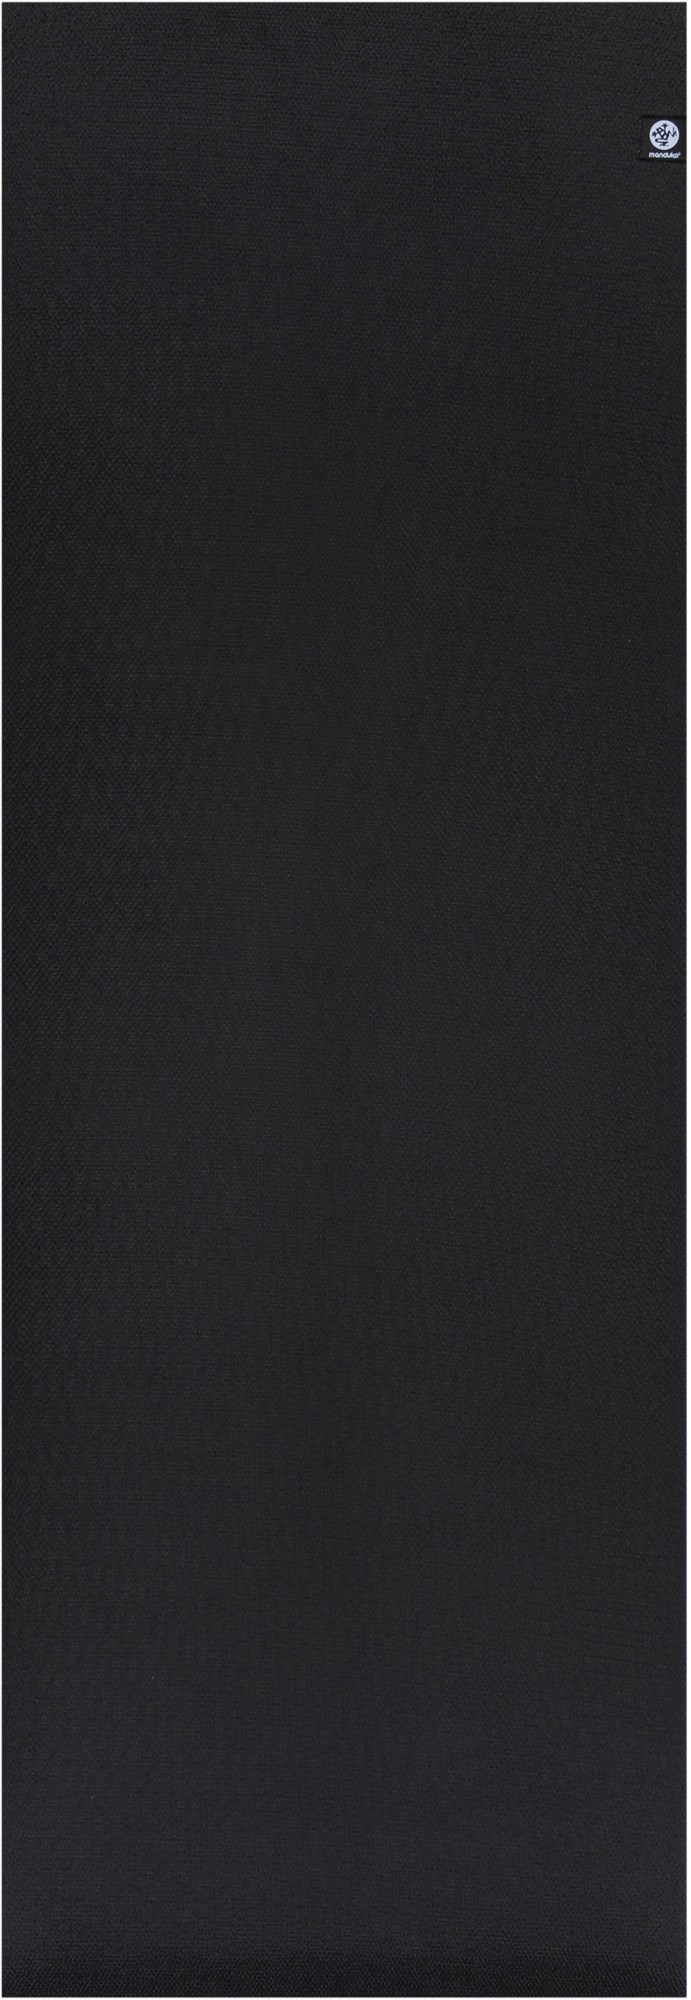 X коврик для йоги - 5 мм Manduka, черный цена и фото